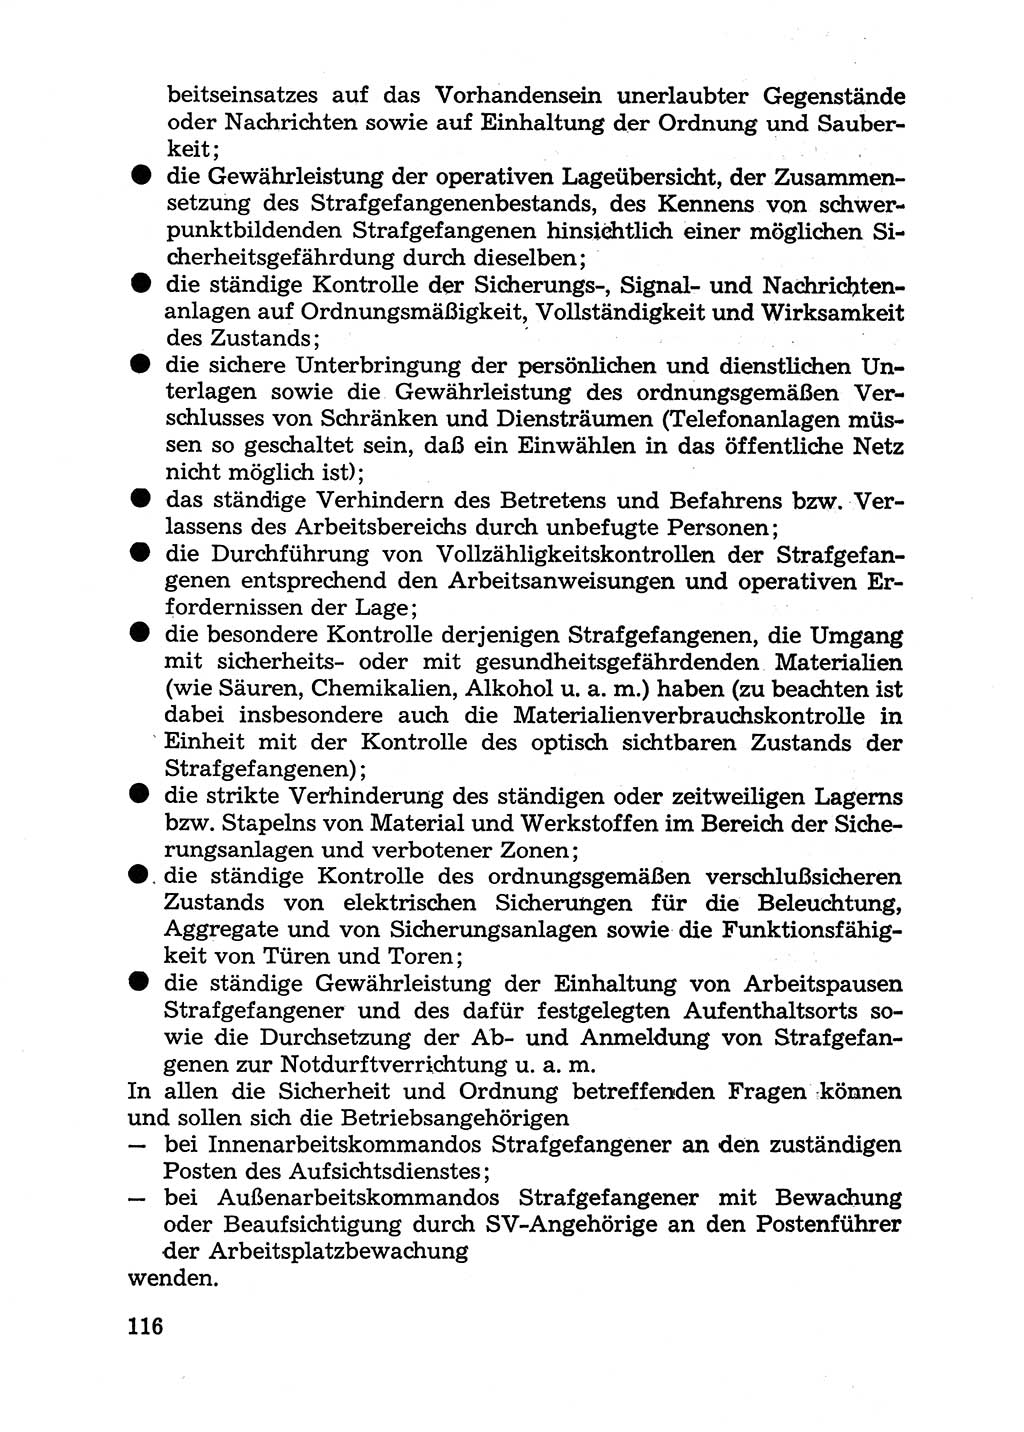 Handbuch für Betriebsangehörige, Abteilung Strafvollzug (SV) [Ministerium des Innern (MdI) Deutsche Demokratische Republik (DDR)] 1981, Seite 116 (Hb. BA Abt. SV MdI DDR 1981, S. 116)